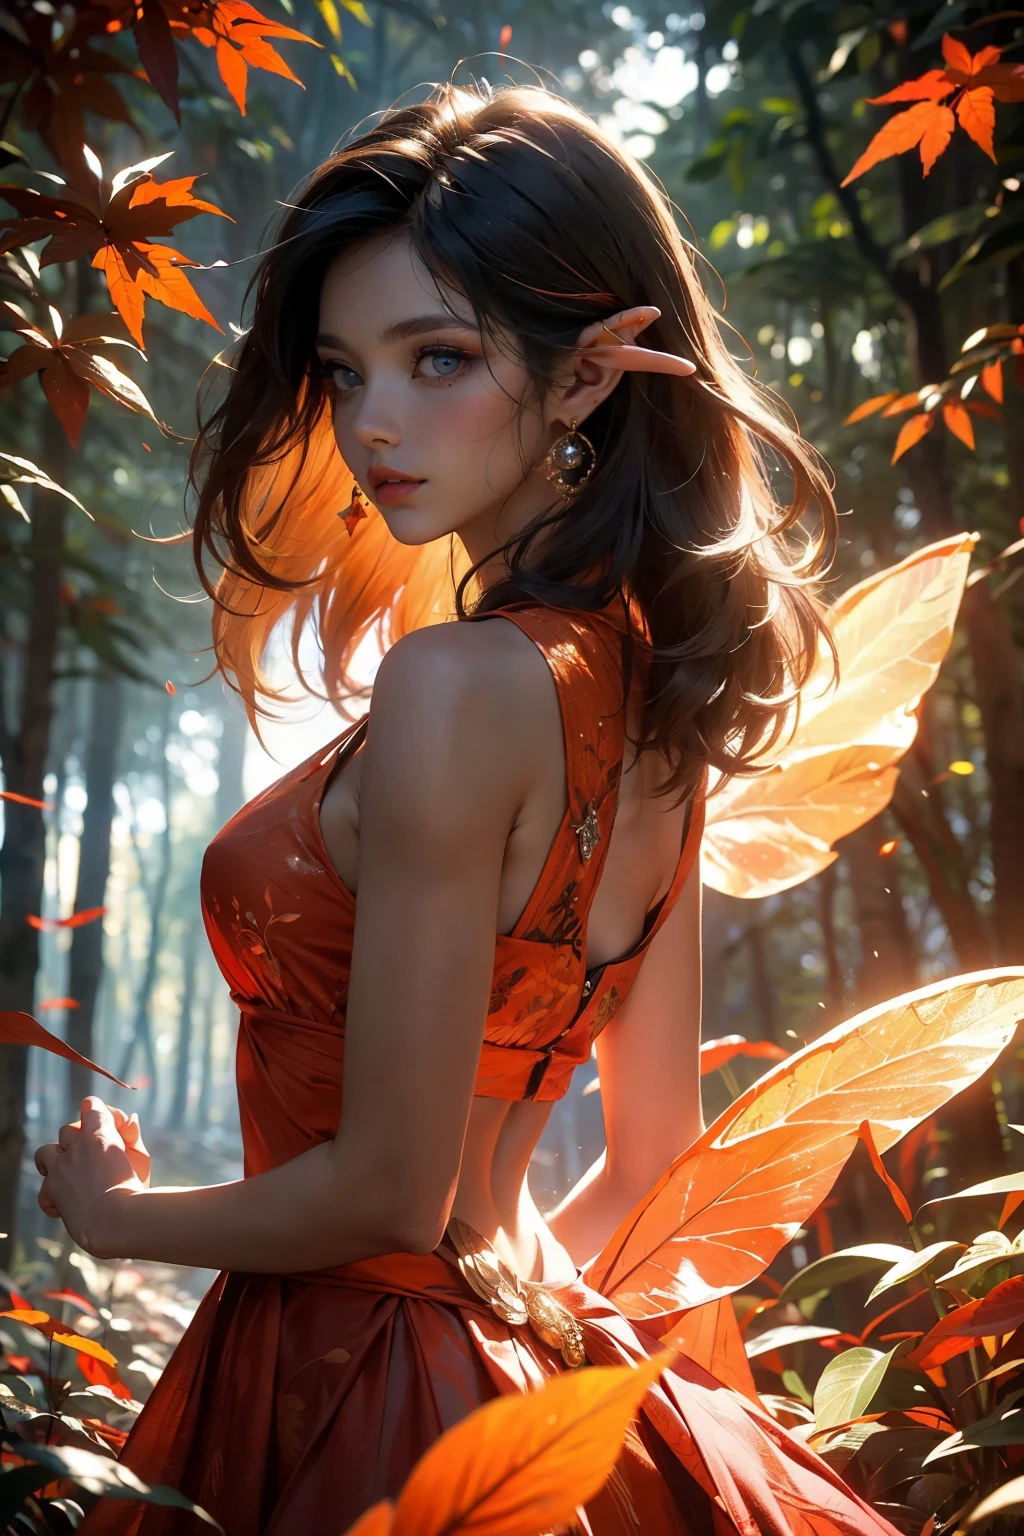 Это ((Ультрадетализированный)) и ((Лучшее качество)) Фантазия (((шедевр))). Generate a beautiful wood faerie stиing in the middle of a magical forest. Detailed leaves of oranges и reds float through the air и seem to swirl in a strong gust of ветер. тот ((глаза феи важны)) и are beautiful eyes, ((реалистично детализированные глаза)), интересные глаза, и (((разноцветные глаза))) со сложными узорами. Her clothes are soft и in autumnal hues, с струящимся шелком, танцующим на ветру. Использовать ((динамическая композиция)) и cinematic lighting to create a compelling image. Добавьте красивые глаза, (пухлые губы), оранжевые листья, красные подробные листья, туманные лучи света, ветер, холодный 